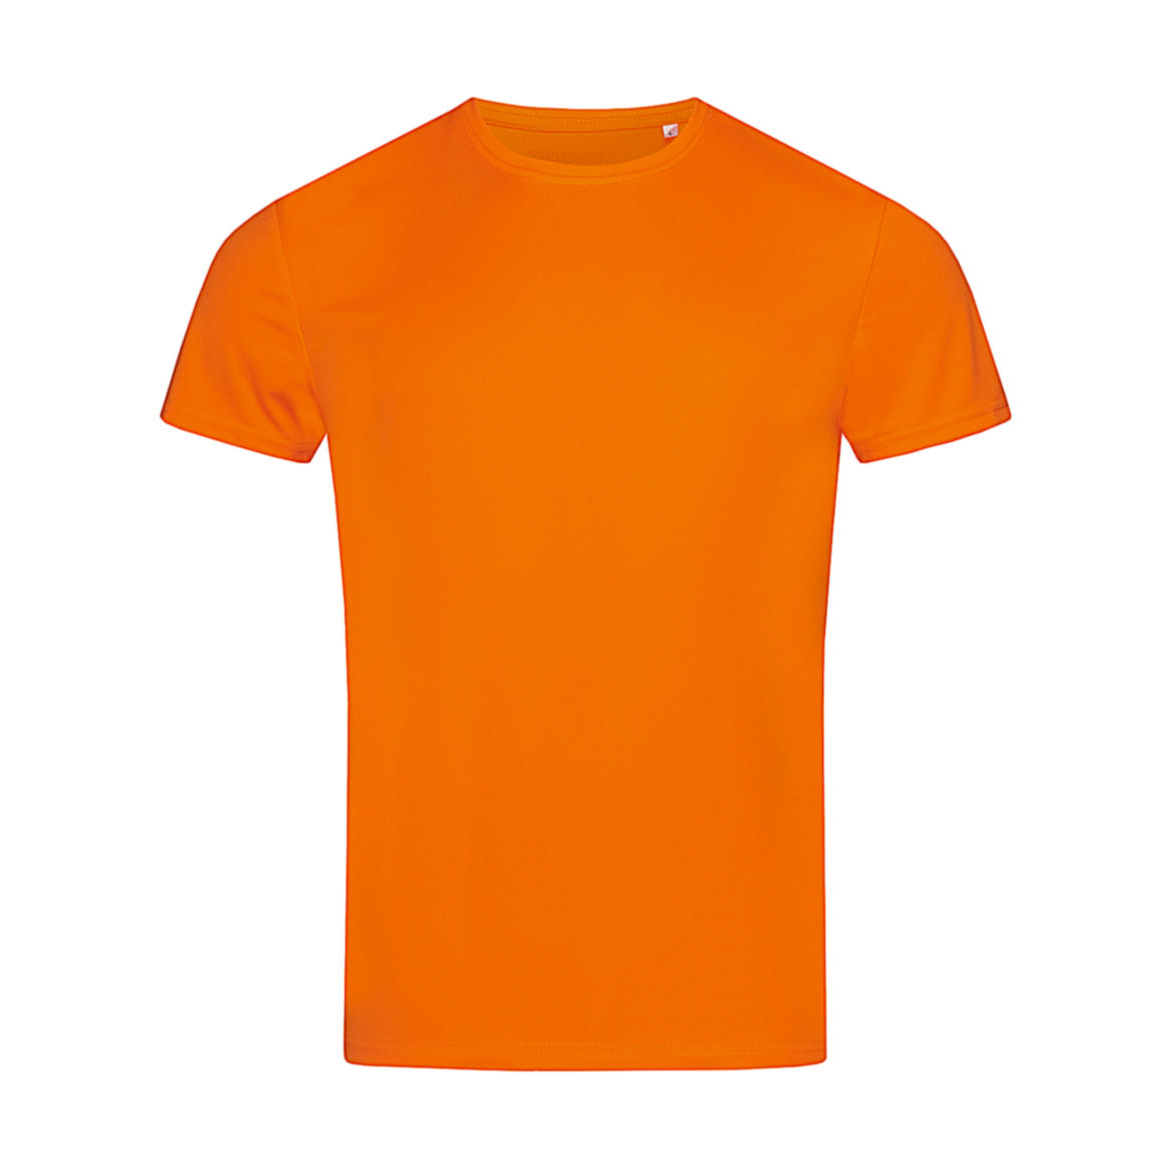 Triko pánské Stedman sportovní tričko - oranžové, XXL